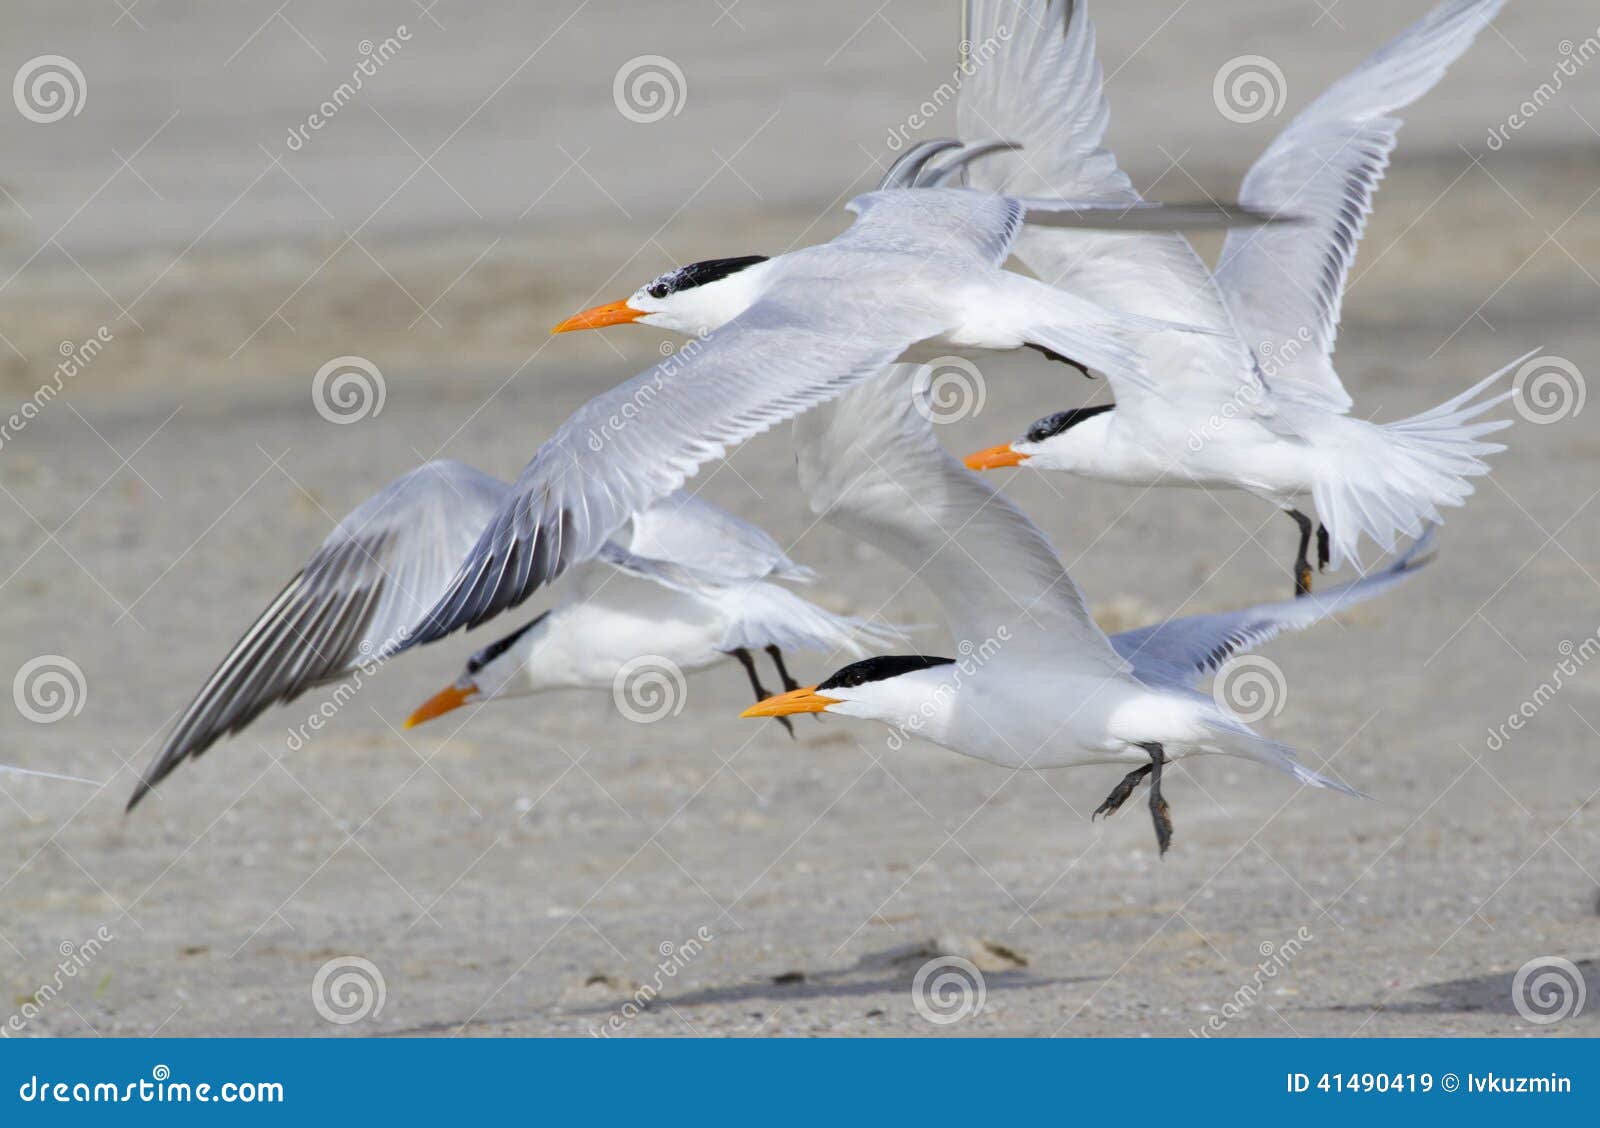 a group of royal terns (sterna maxima)